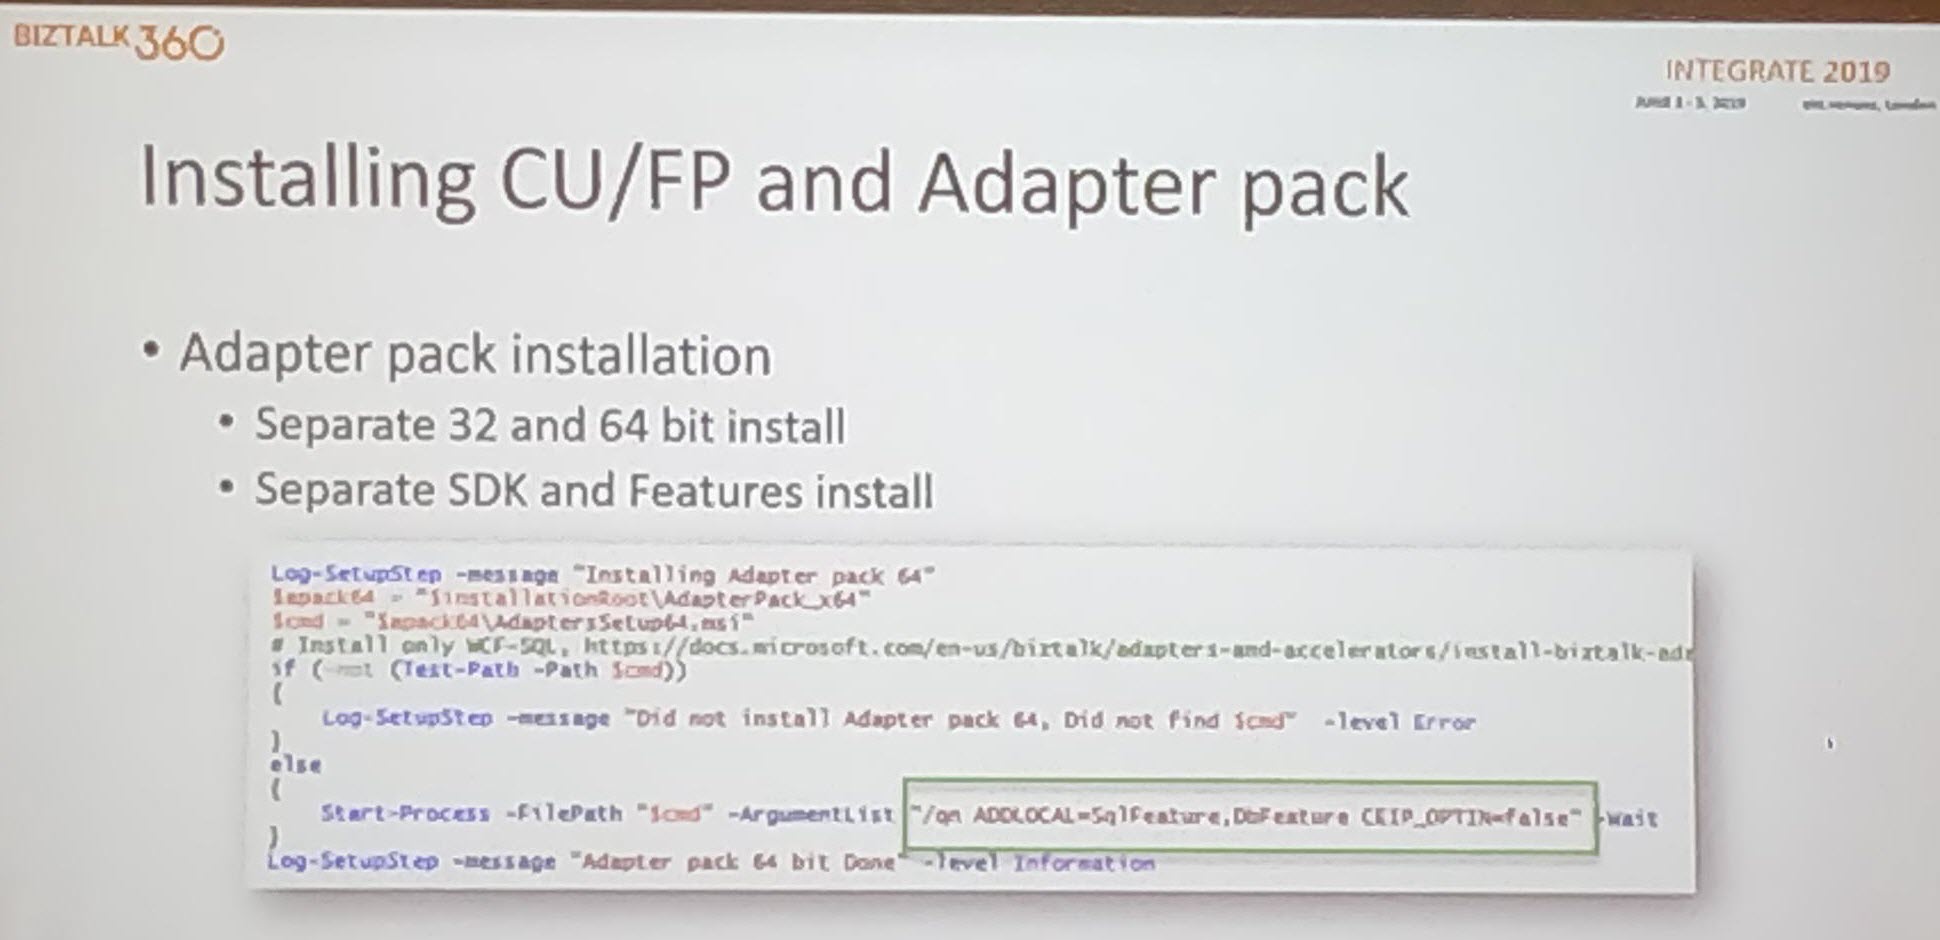 Installing CU/Adapter pack in Integrate 2019